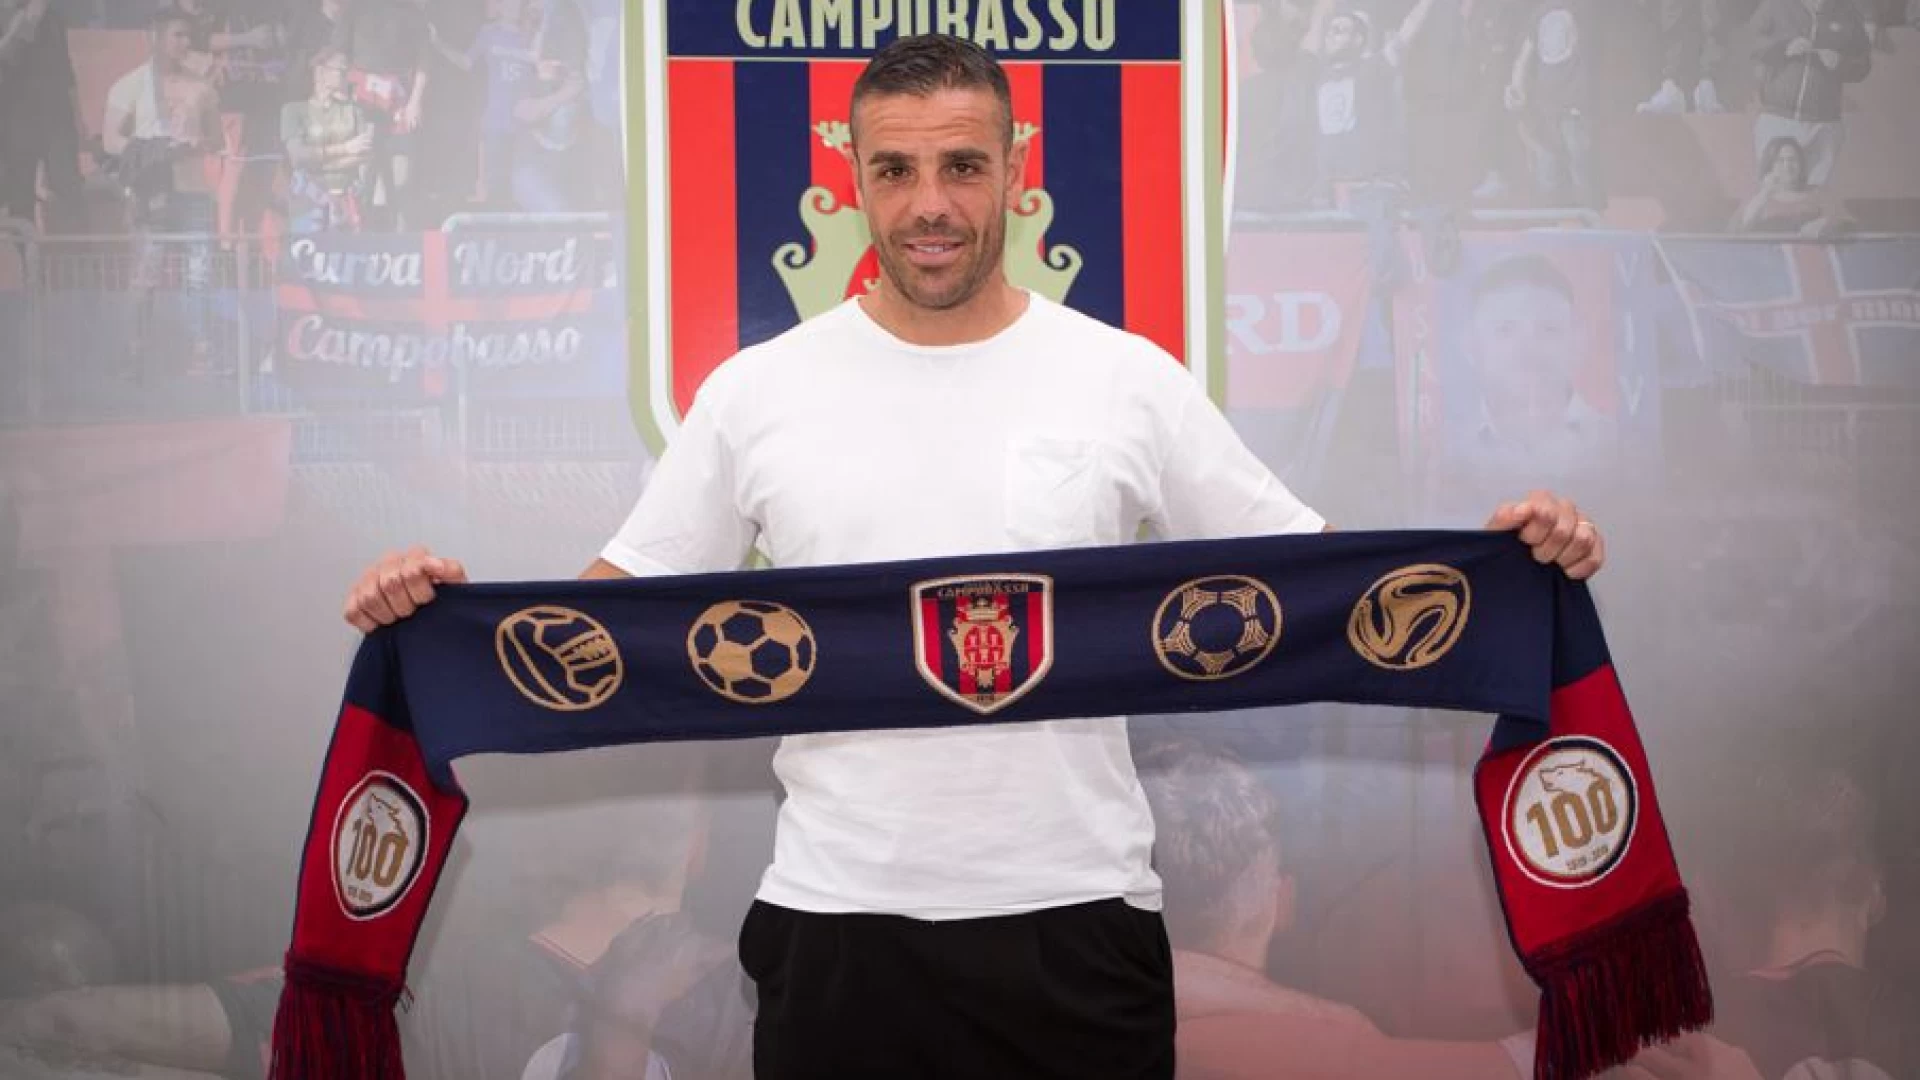 Lega Pro: Fabio Prosperi è il nuovo allenatore del Campobasso.